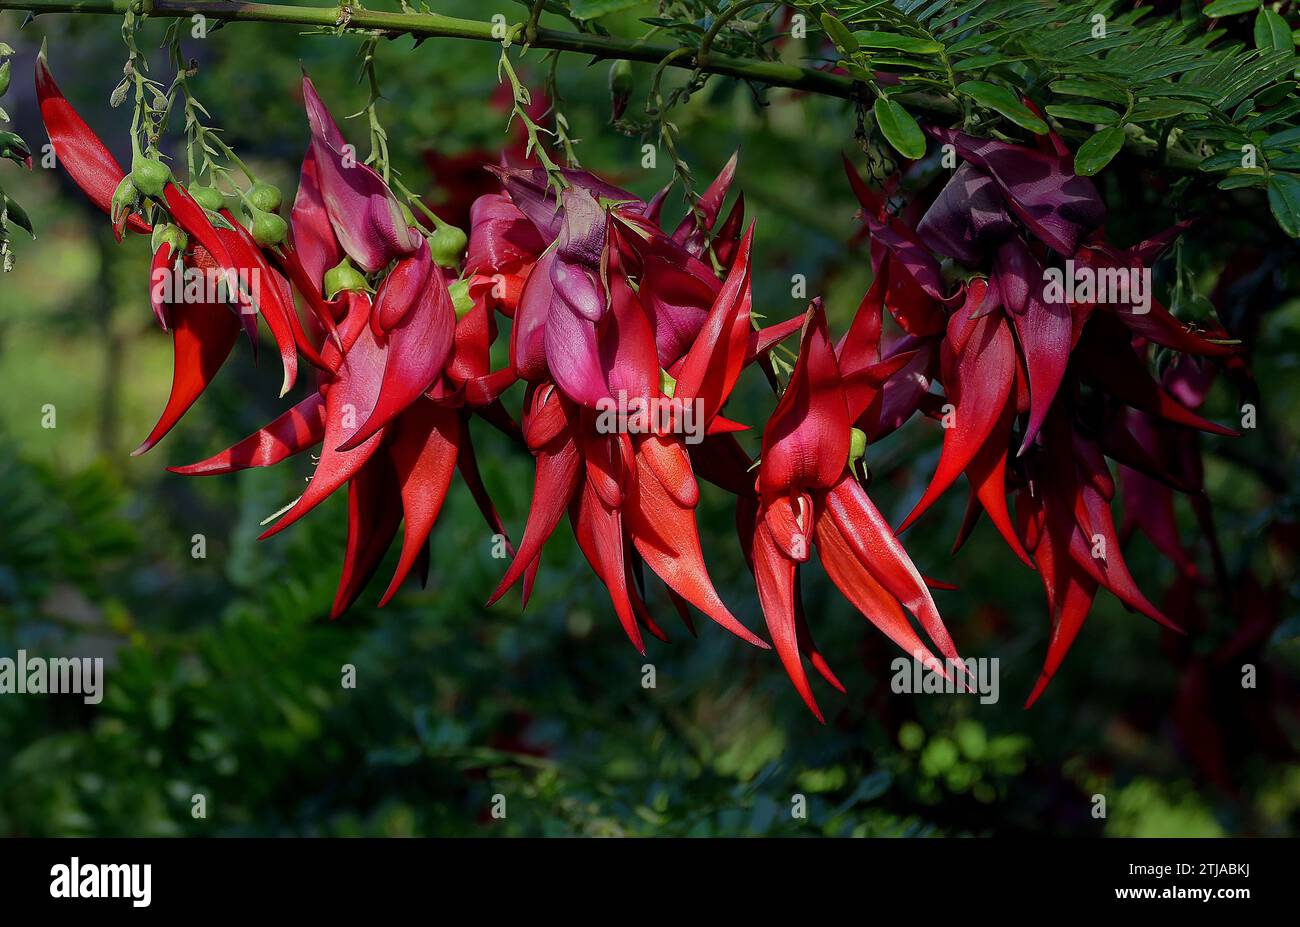 Clianthus puniceus, auch bekannt als Kaka-Schnabel (K?whai Ngutu-k?k?k?) In M?ori) ist eine Art blühender Pflanze aus der Gattung Clianthus der Leguminosenfamilie Fabaceae, die auf der Nordinsel Neuseelands beheimatet ist. Clianthus puniceus ist ein immergrüner Sträucher, eine von zwei Arten von Clianthus, die beide auffällige Gruppen roter, röhrenförmiger Blüten aufweisen, die dem Schnabel des neuseeländischen Papageiens k?k? Ähneln. Die Pflanze ist auch bekannt als Papageienschnabel, Papageienschnabel und Hummerkralle. Quelle: BSpragg Stockfoto